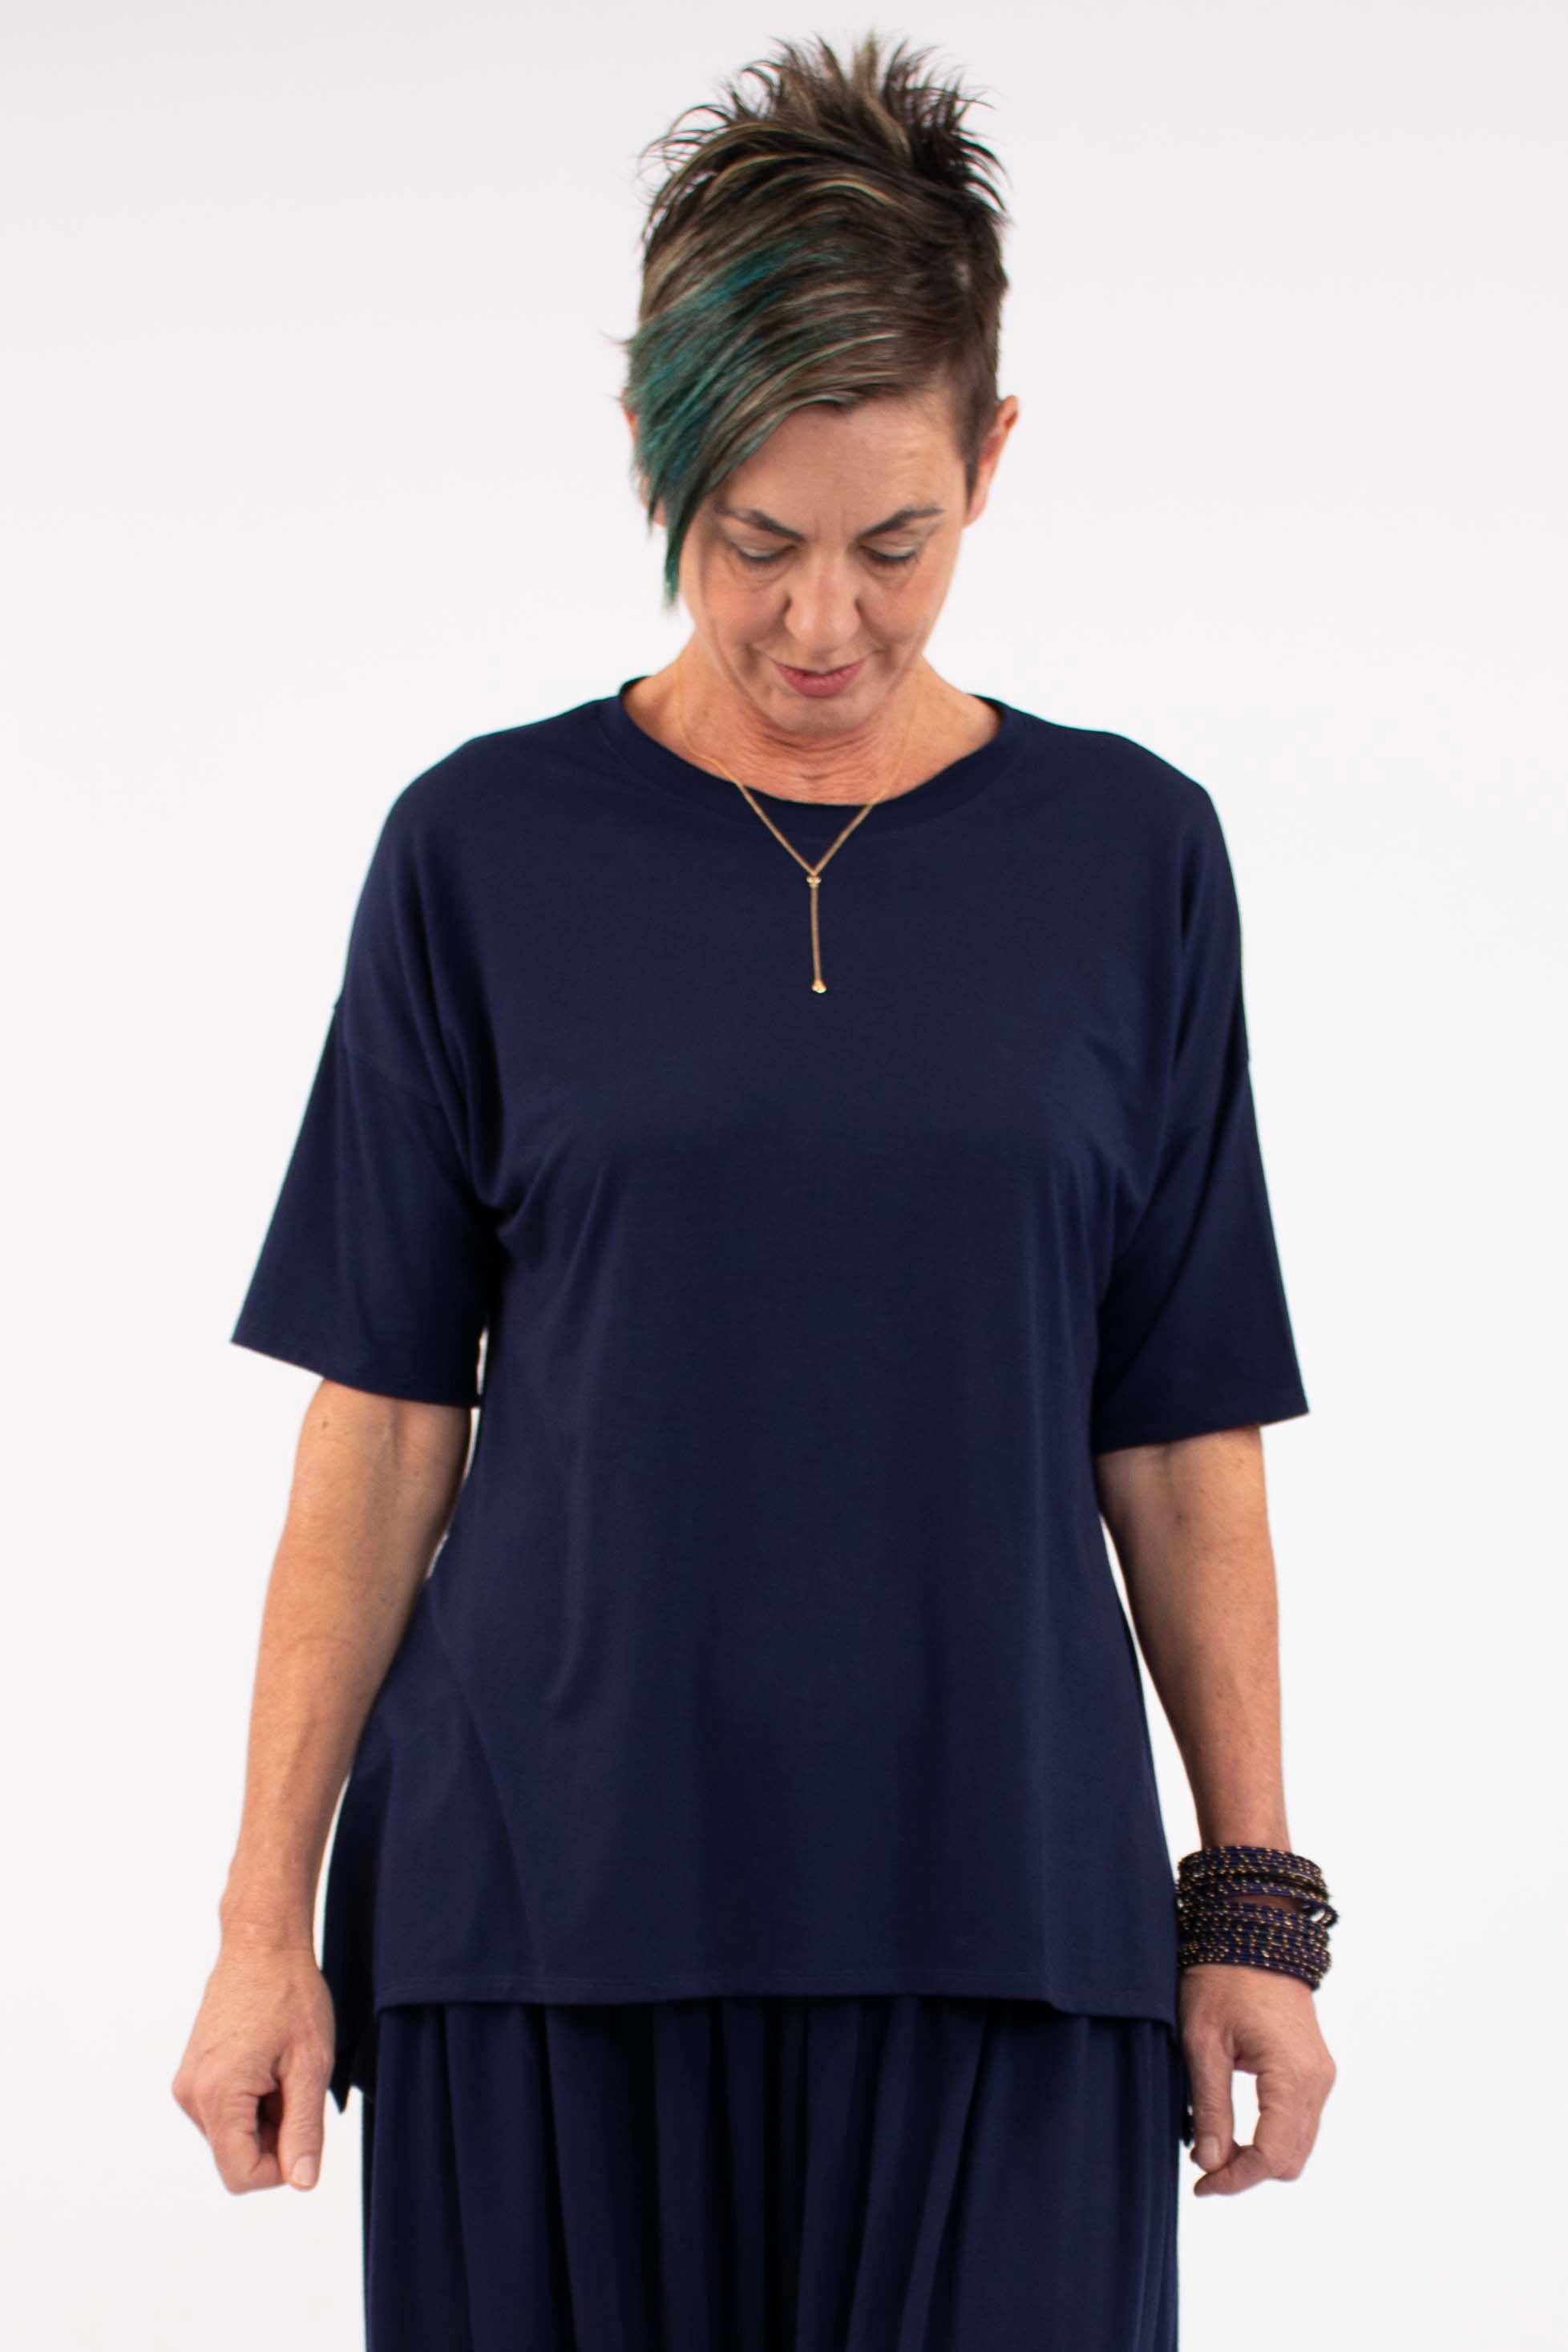 active-wear-t-shirt-navy-track-suit-shop-online-australia-womens-fashion